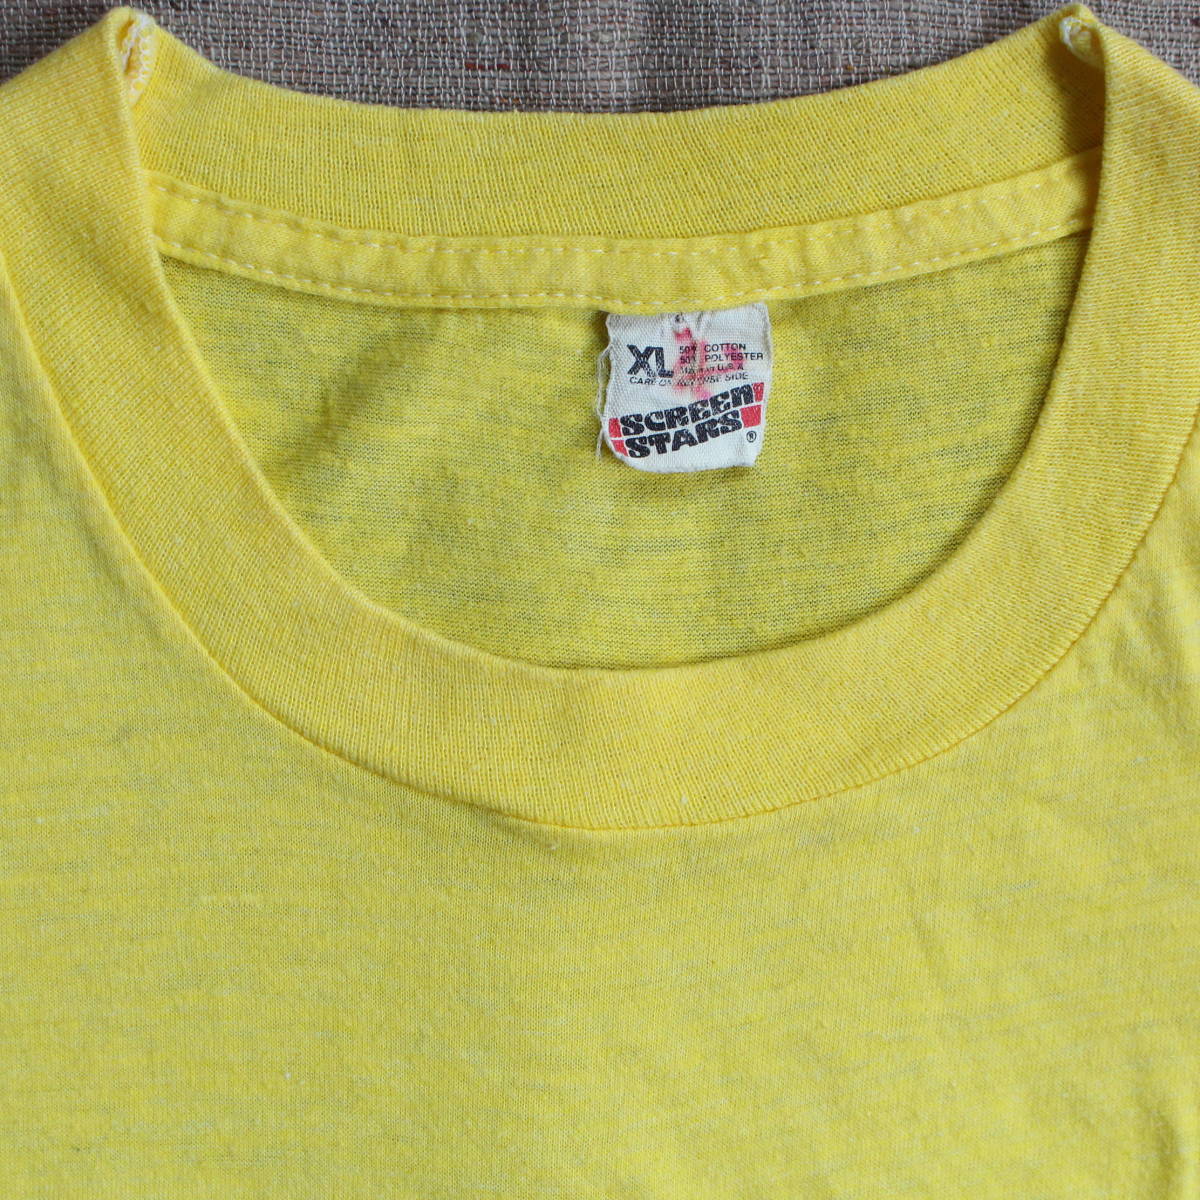 1980-90s アイスクリーム ヴィンテージTシャツ フローズン カスタード イエロー 黄 アート イラスト 古着 XL ショップ screen stars レア_50%コットン50%ポリ　XLサイズ